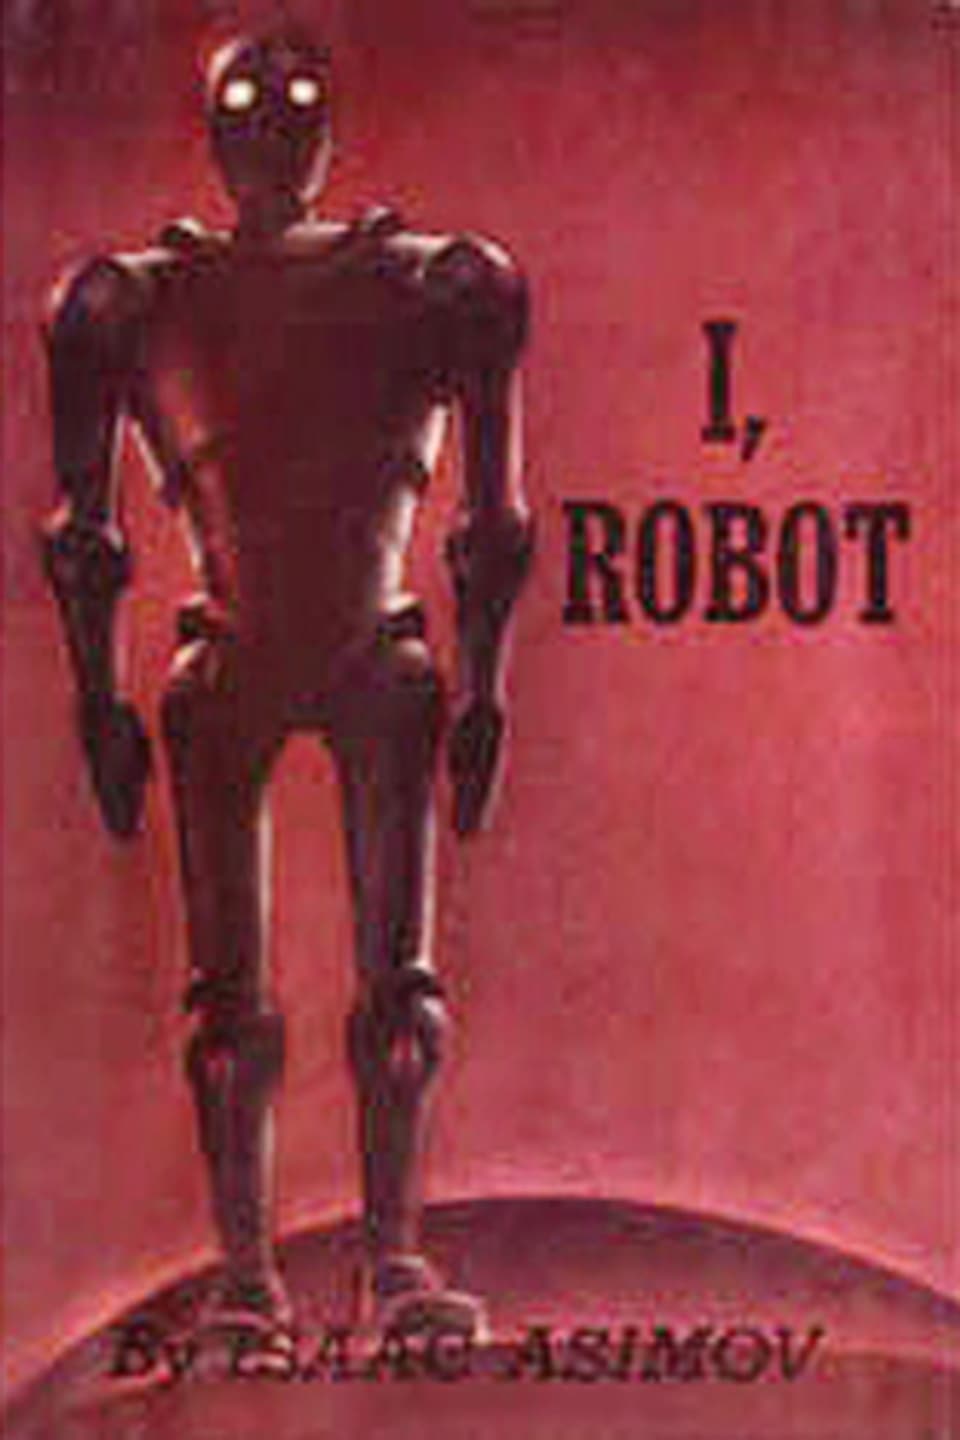 Ein dunkelroter Roboter mit weissen Augen vor rotem Hintergrund